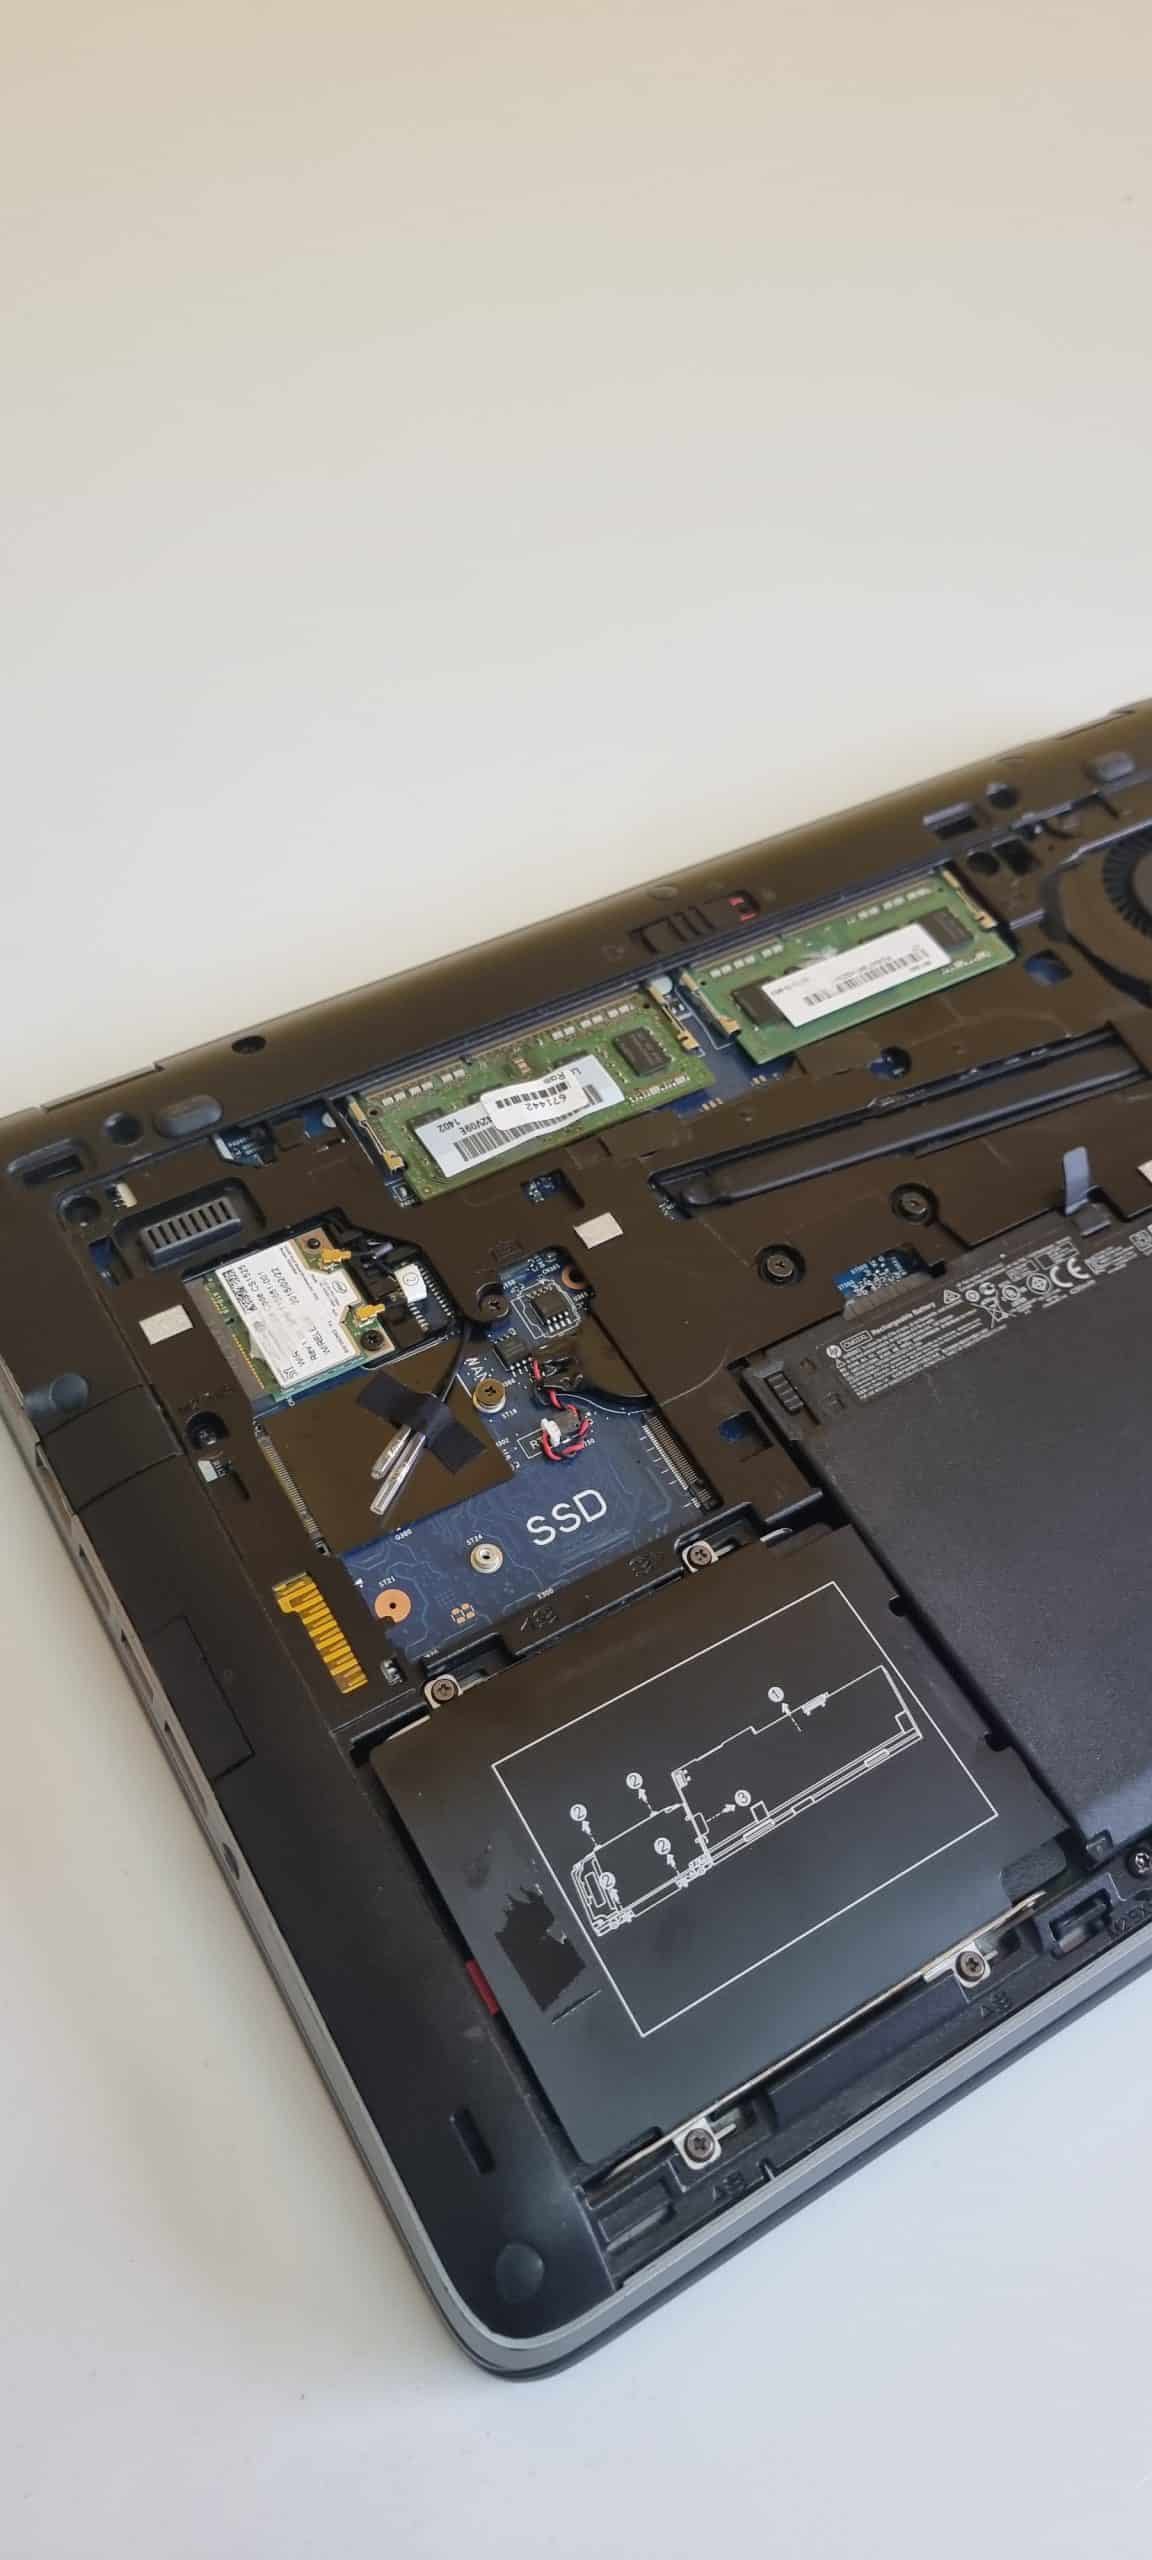 HP EliteBook 840 G1 Notebook | Intel Core i5-4300U 1,9 GHz | 14